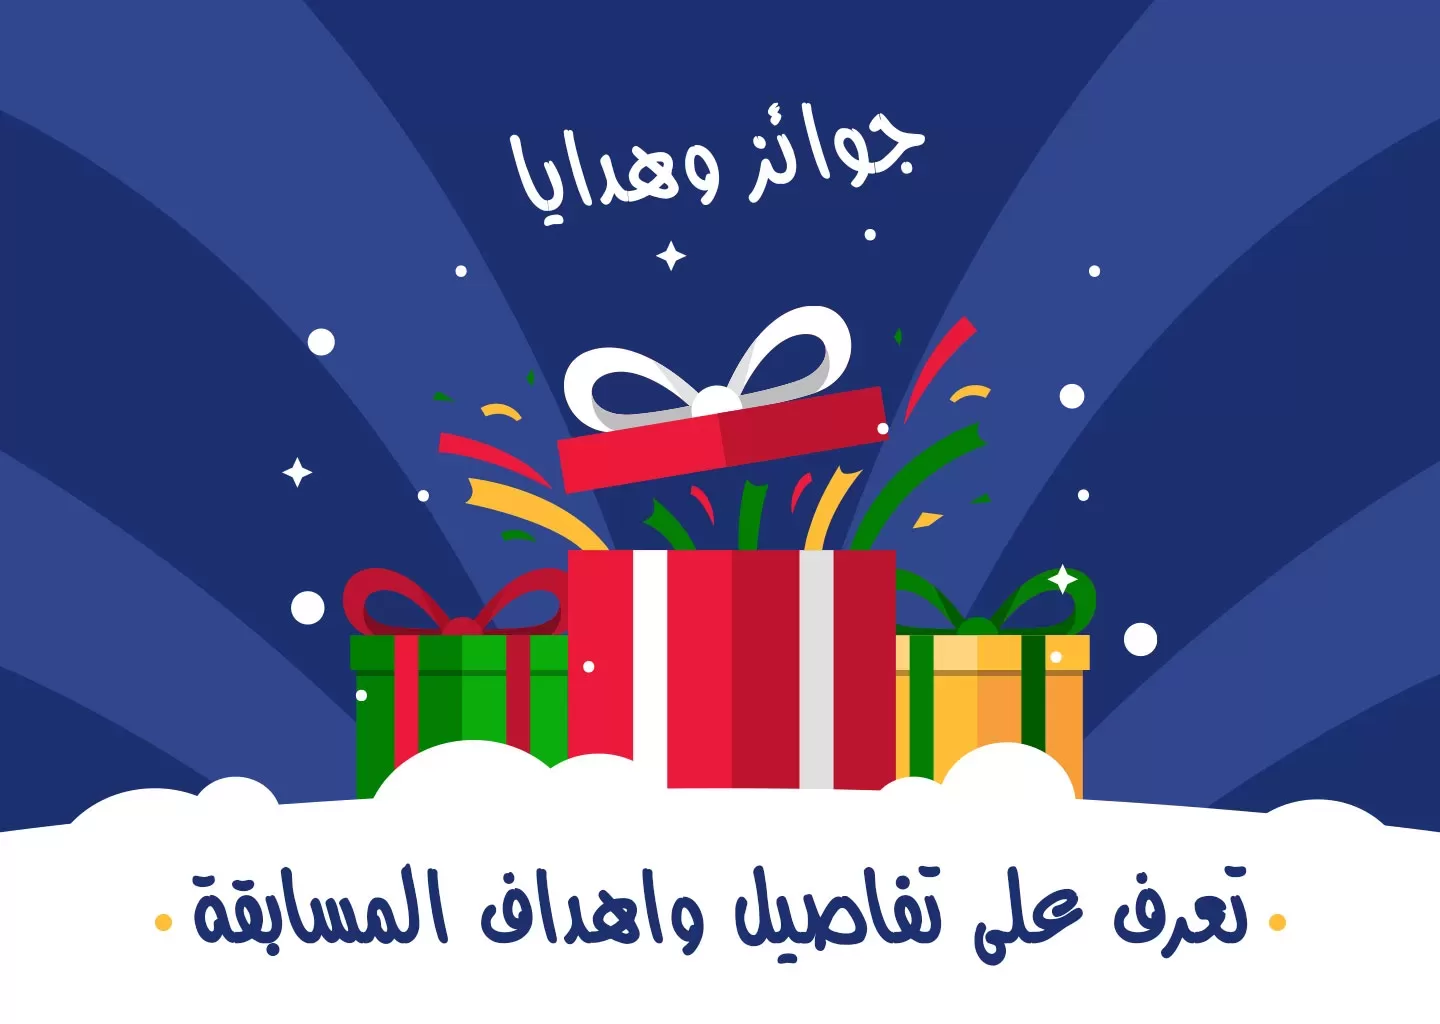 مسابقة موقع بوابة ألعاب العرب AGP للاعبين العرب